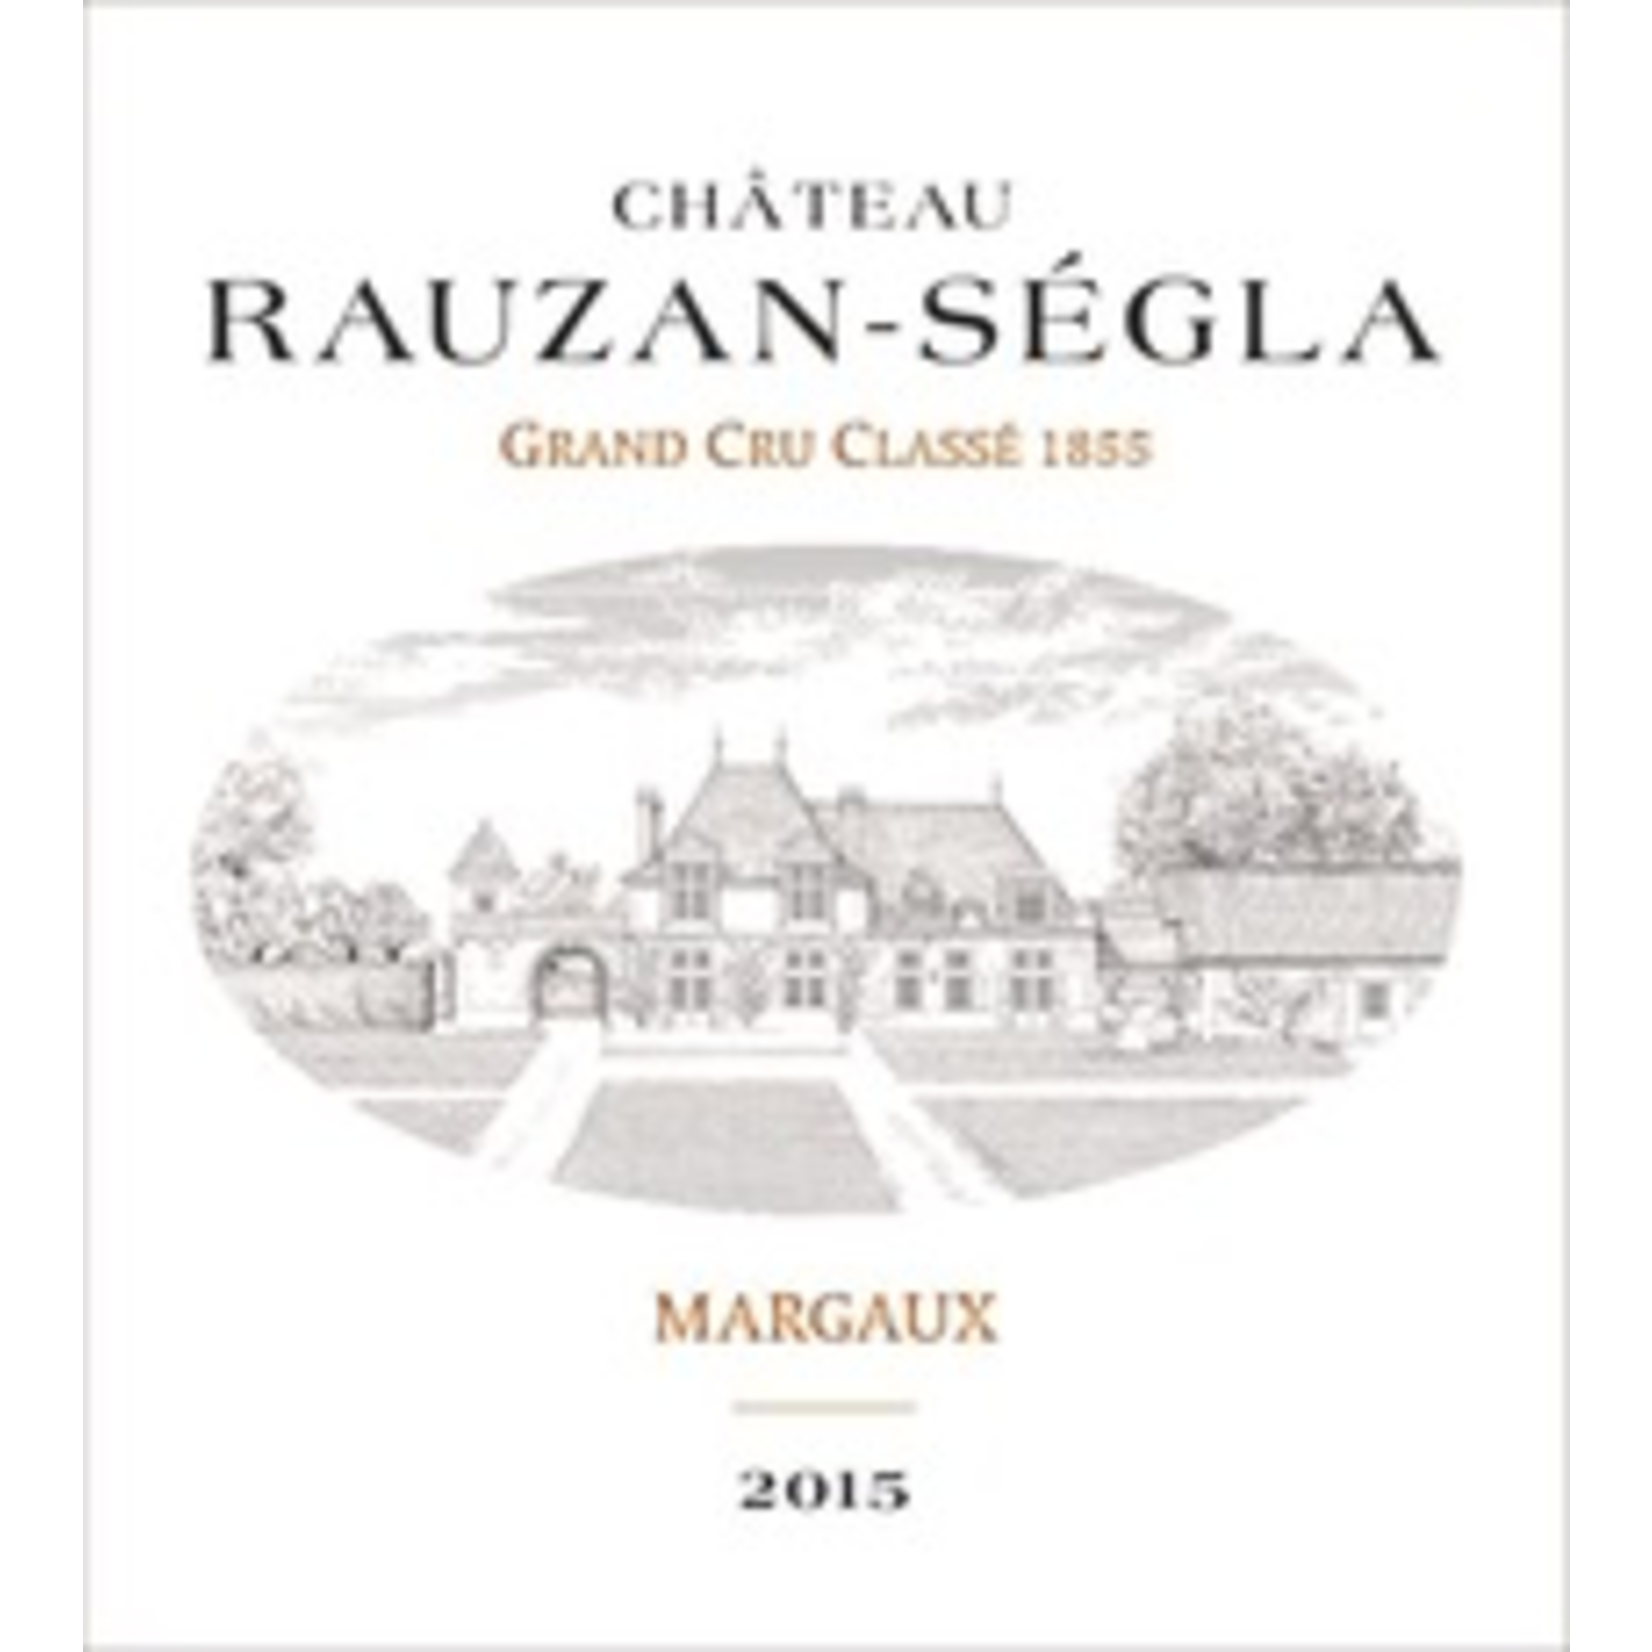 Wine Chateau Rauzan-Segla Grand Cru Classé Margaux 2015